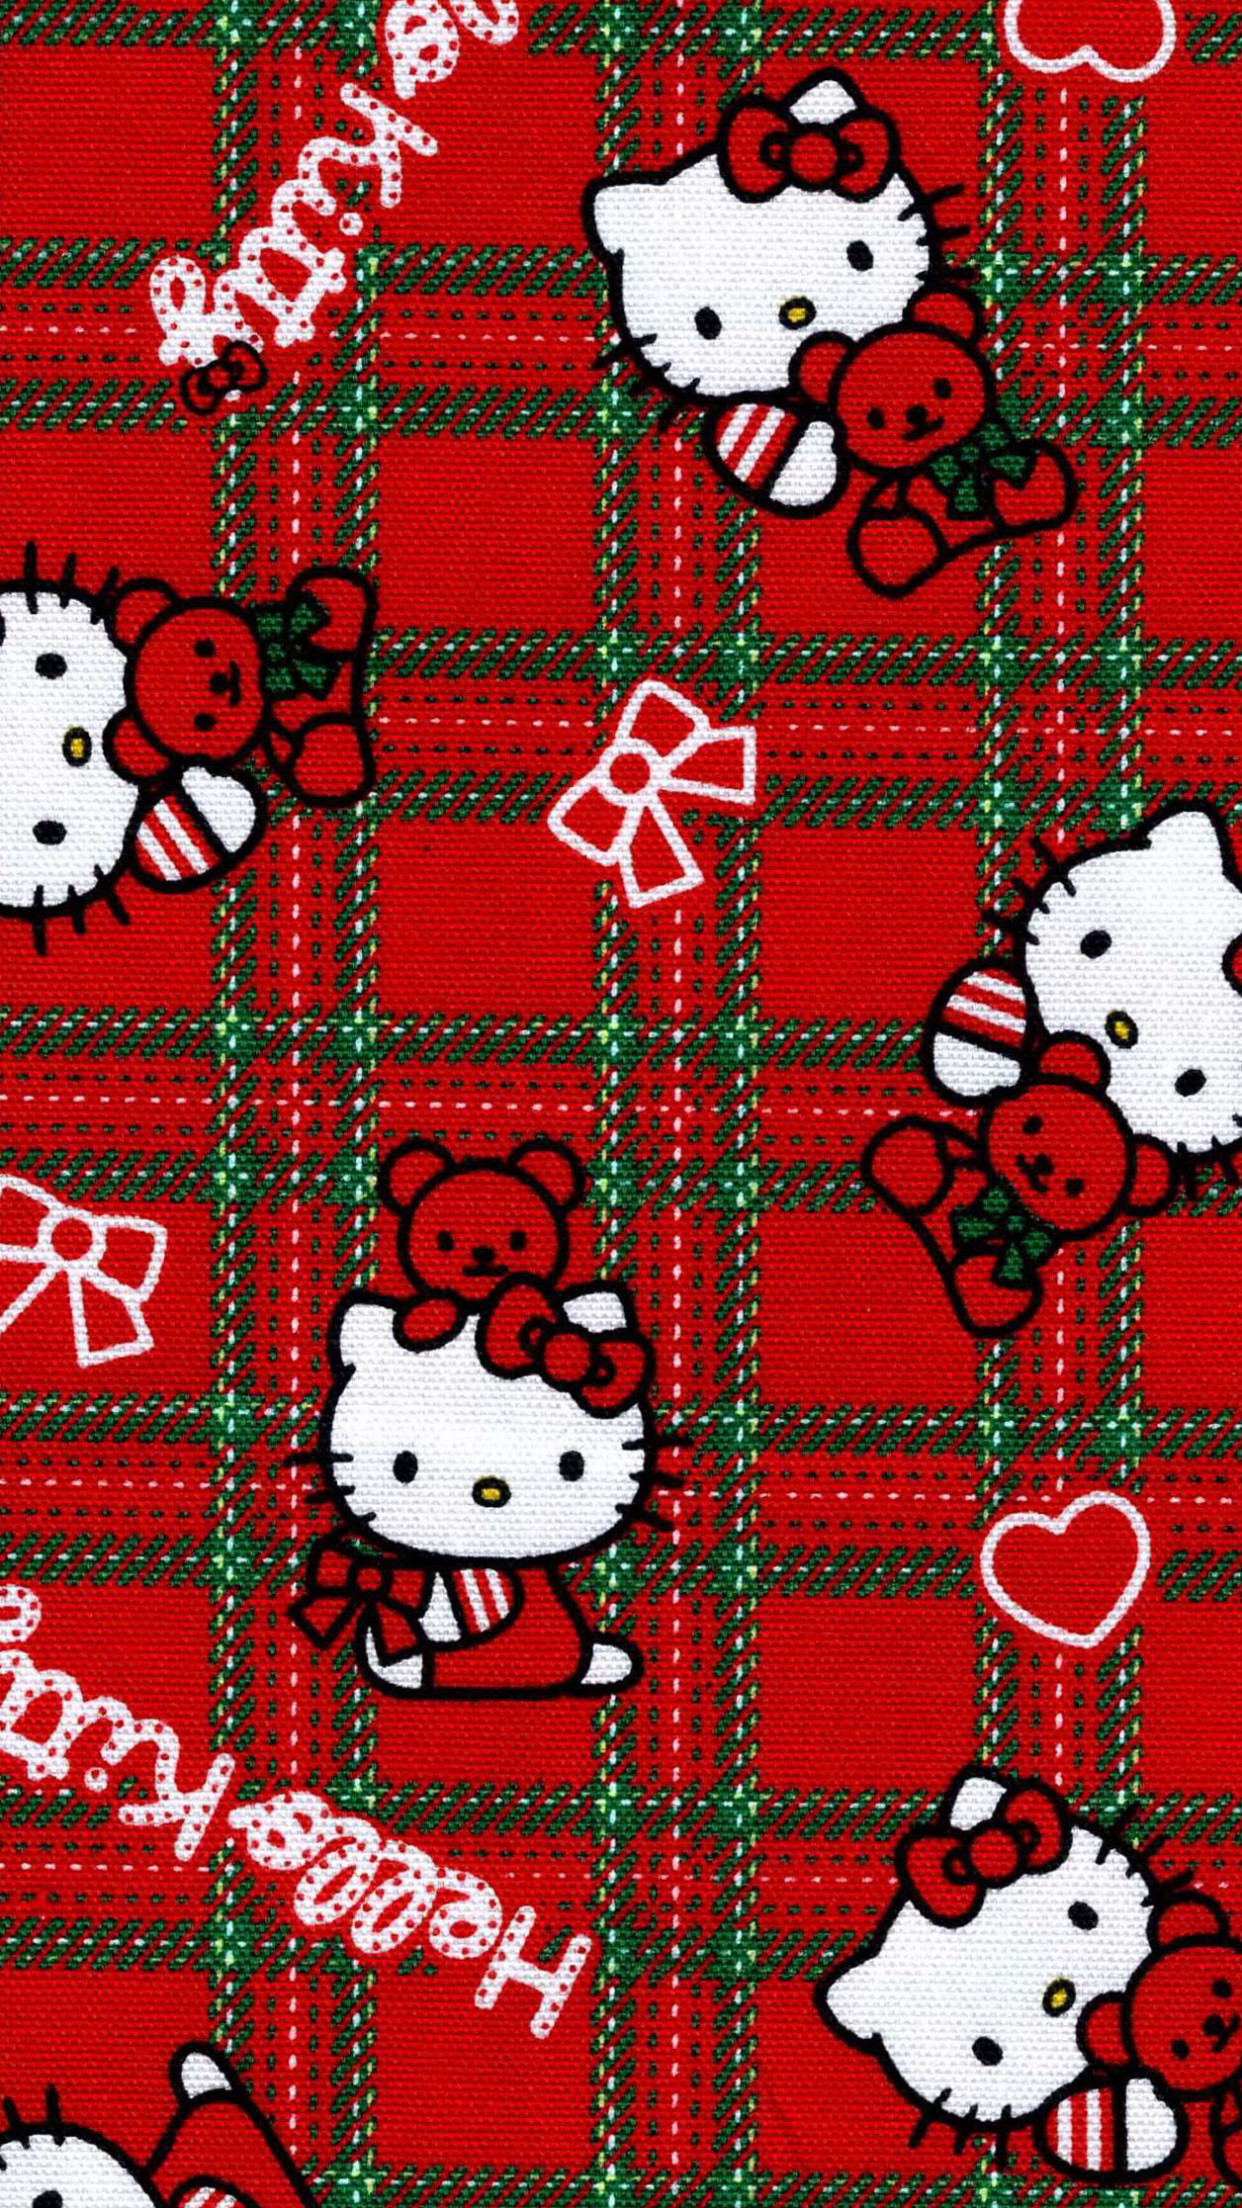 20 Cute Hello Kitty Wallpaper Ideas  Pink Glitter Heart  Idea Wallpapers   iPhone WallpapersColor Schemes